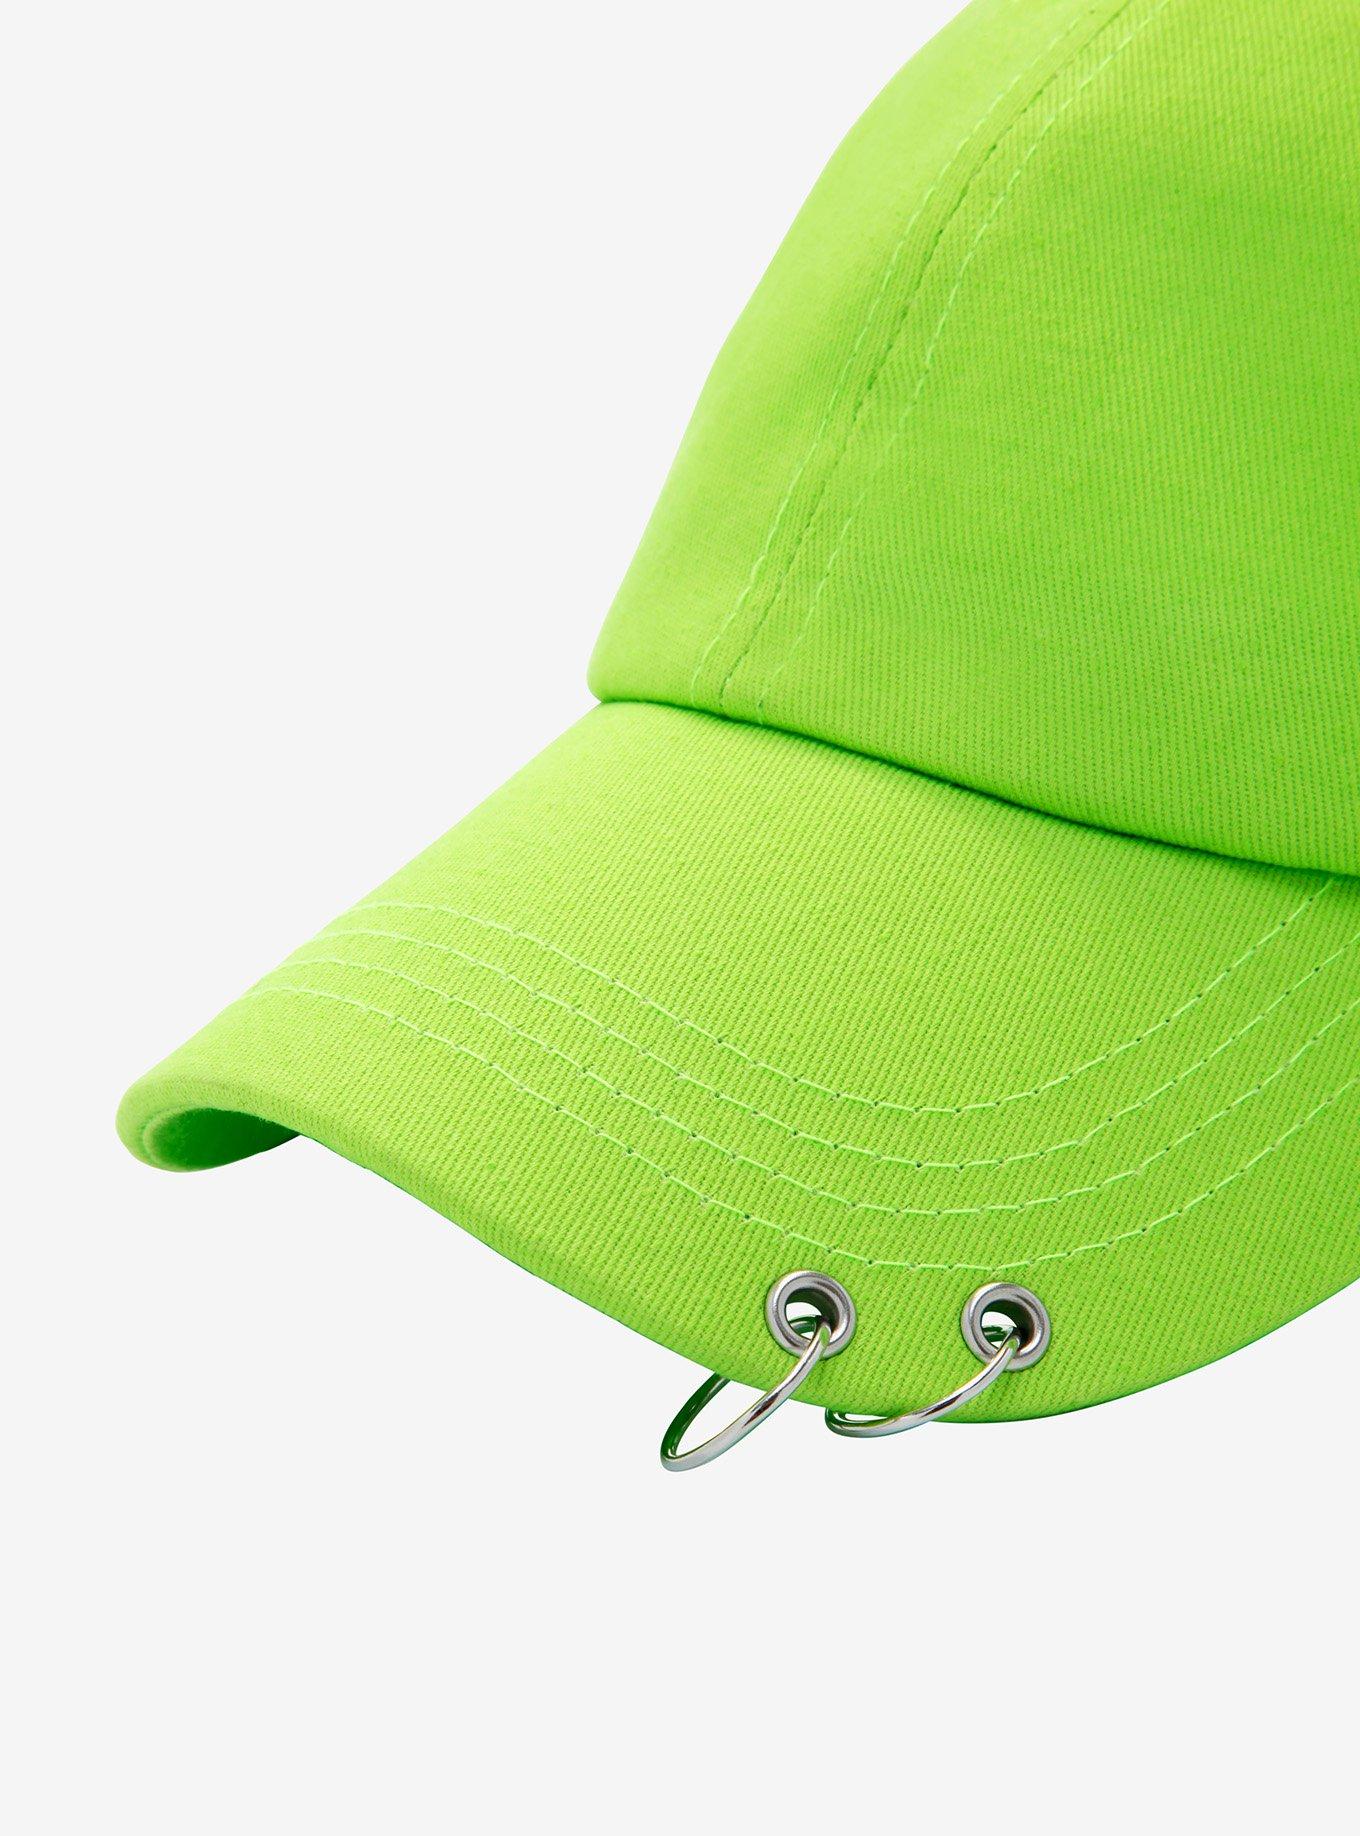 Neon Green Hoop Dad Cap, , alternate